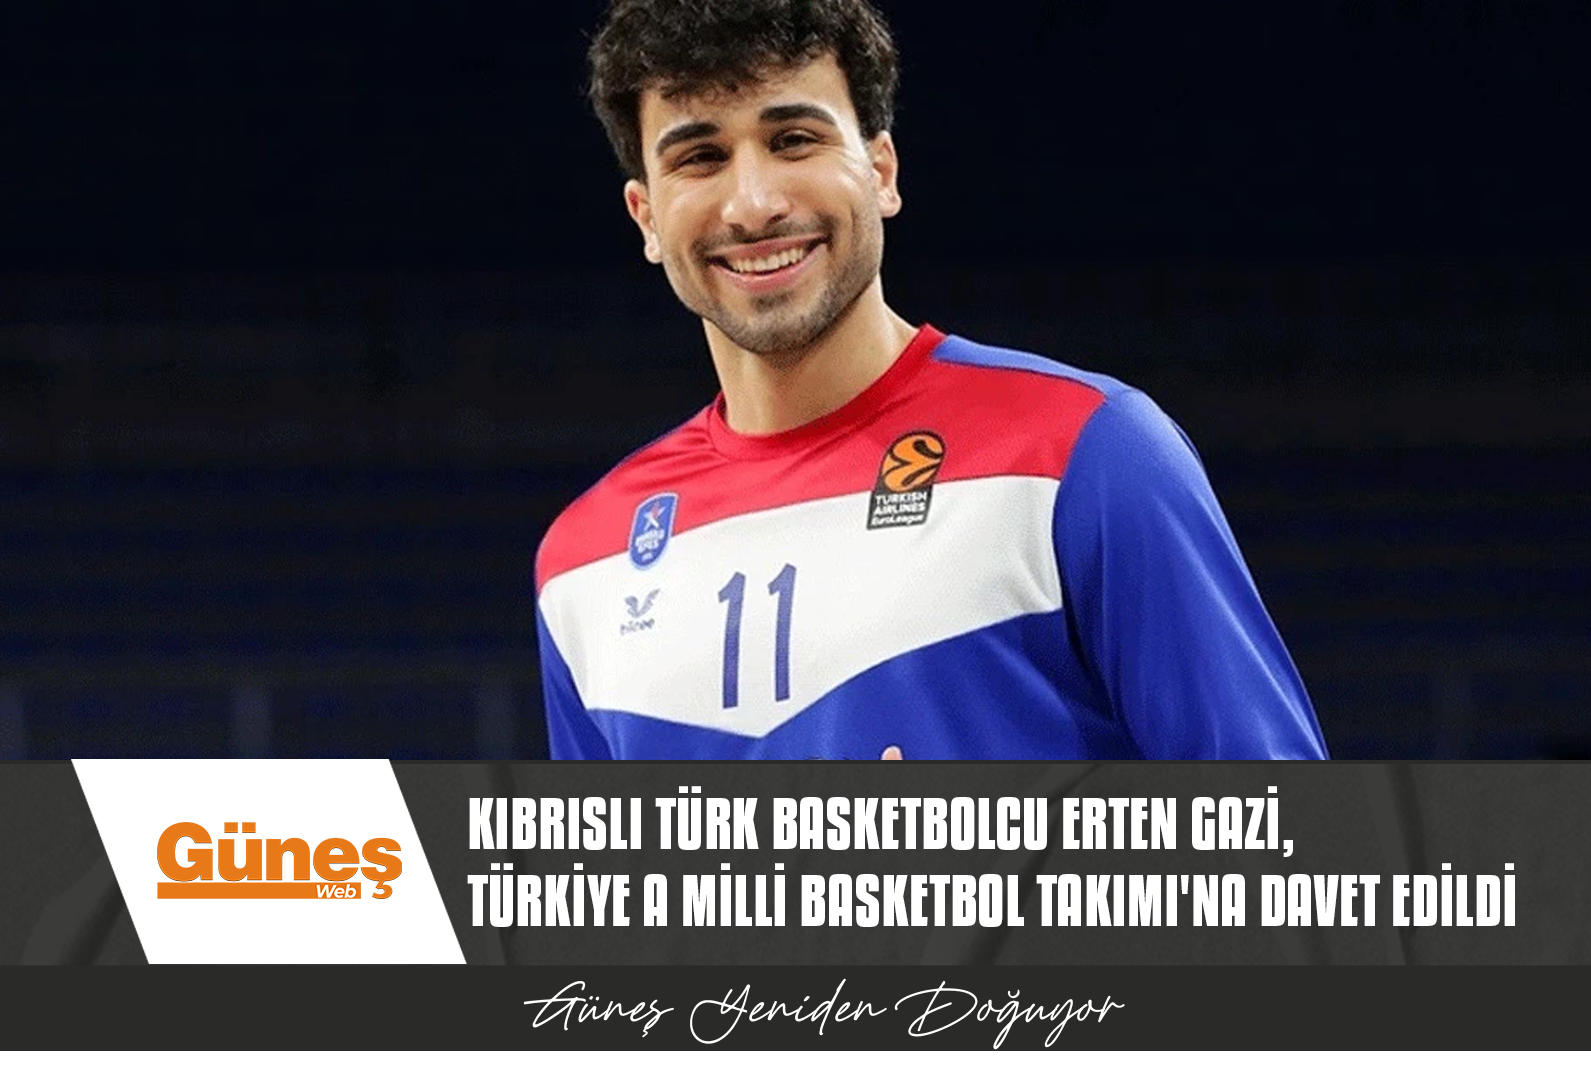 Kıbrıslı Türk basketbolcu Erten Gazi, Türkiye A Milli Basketbol Takımı’na davet edildi